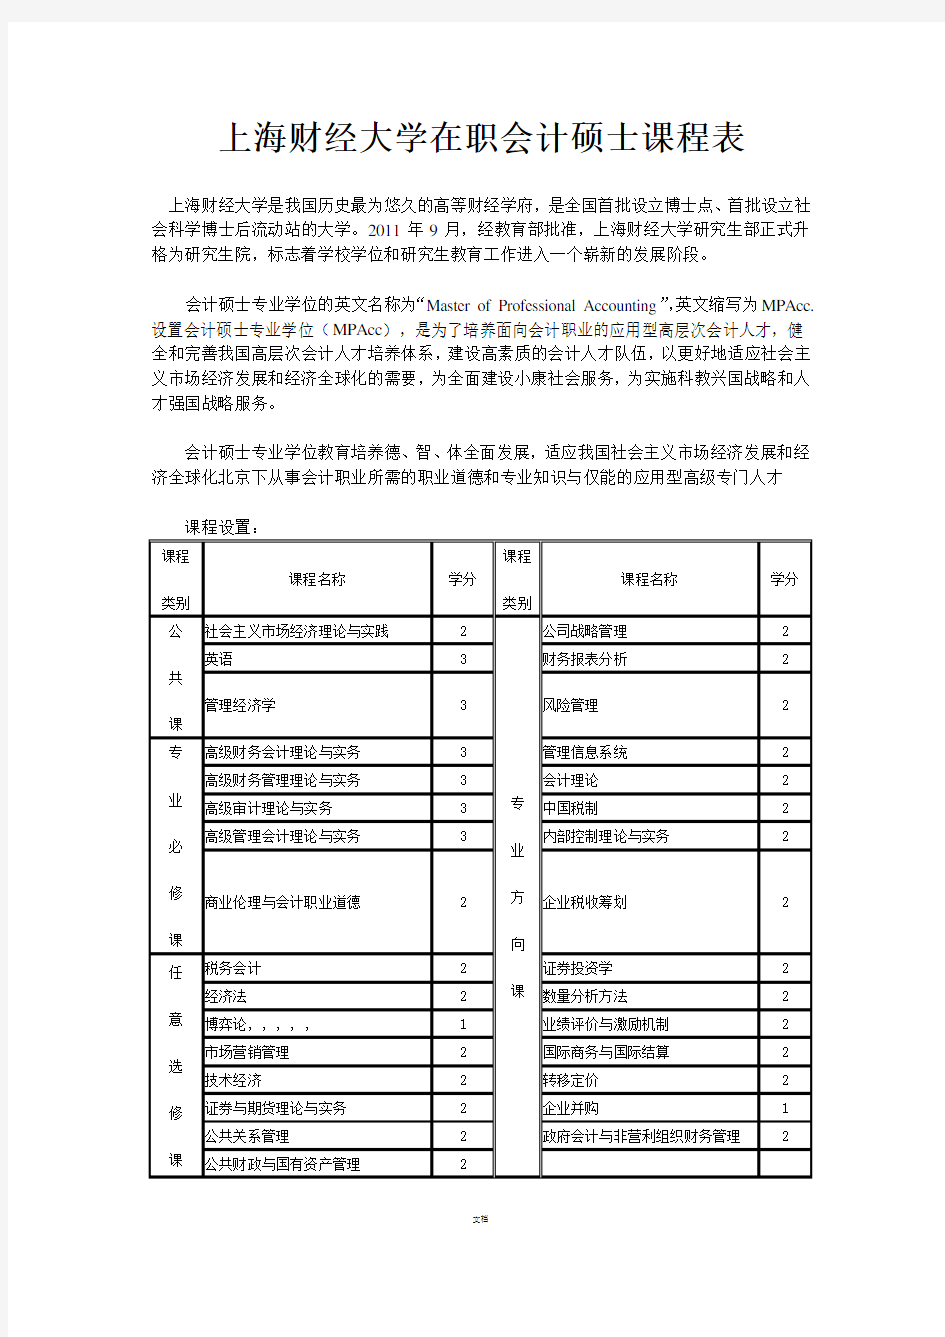 上海财经大学在职会计硕士课程表